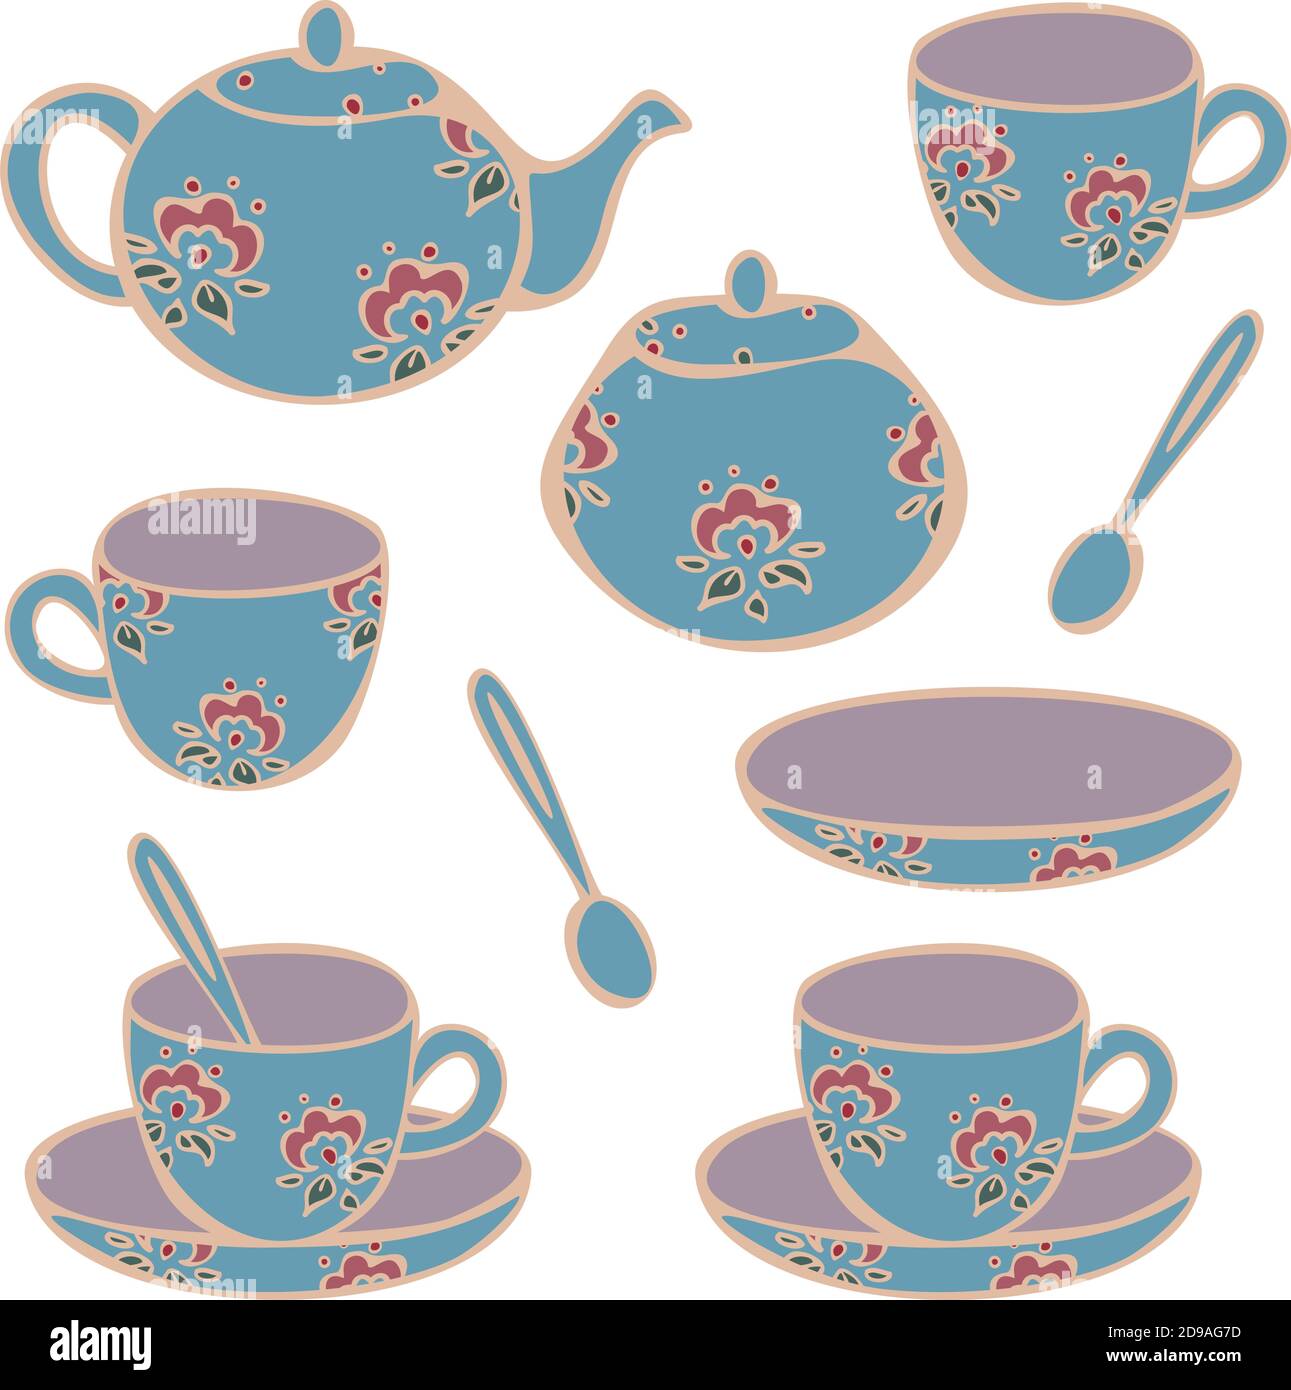 Vector Set von Geschirr für Tee-Trinken - Tassen, Tassen, Teekanne und Zucker Schüssel. Konzept für Teestube oder Café. Sammlung von klassischen Tassen für Tee. Stock Vektor